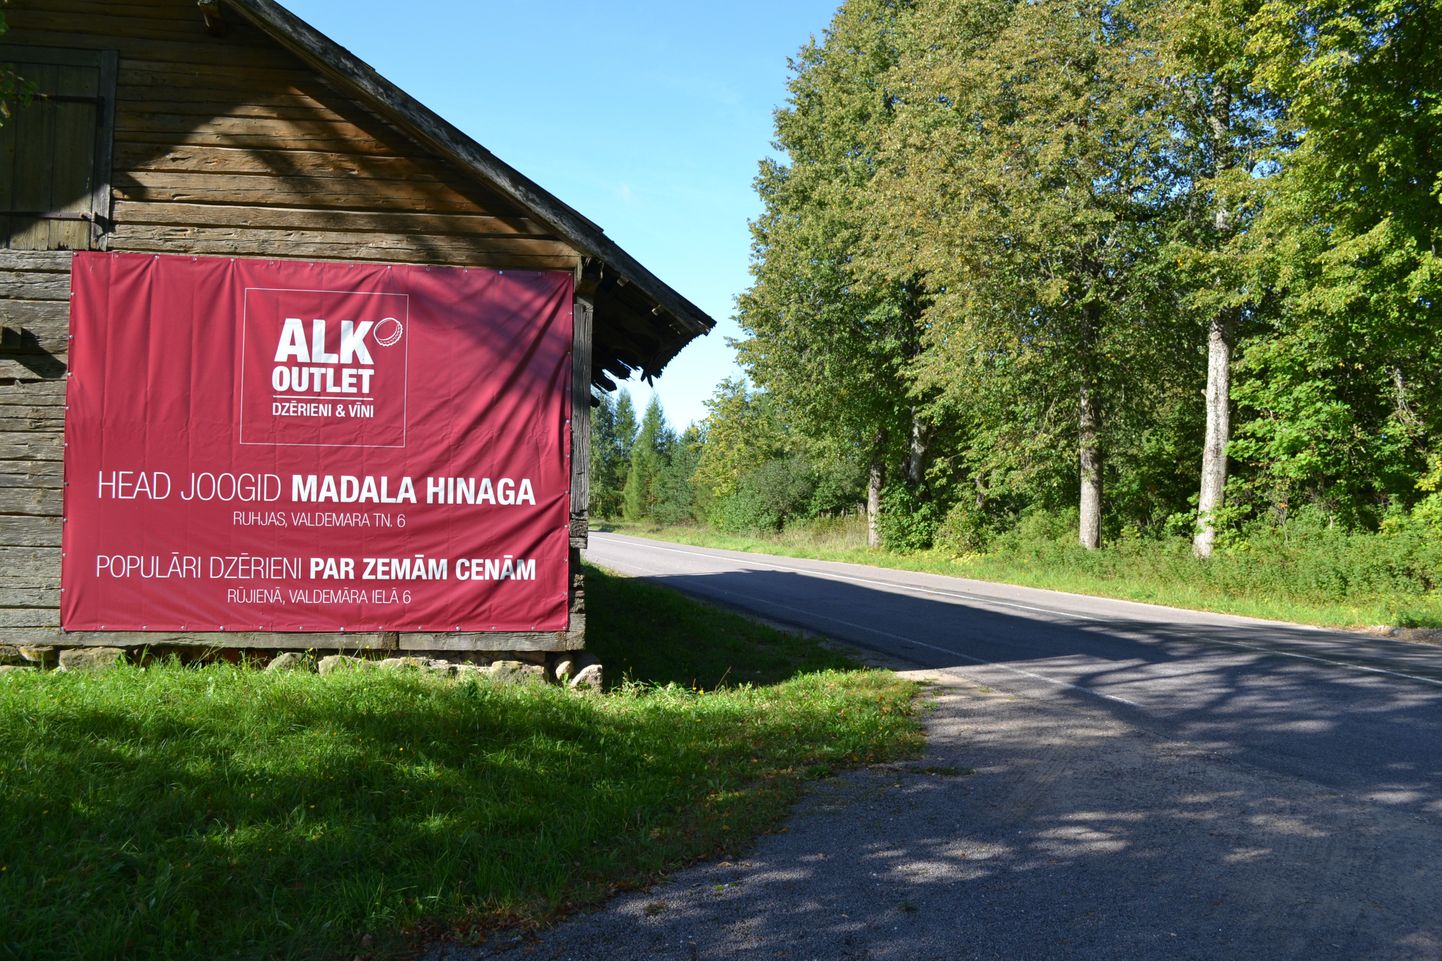 Mõned kilomeetrit Lilli piiripunktist Läti poole kutsub reklaam alkoholipoodi.